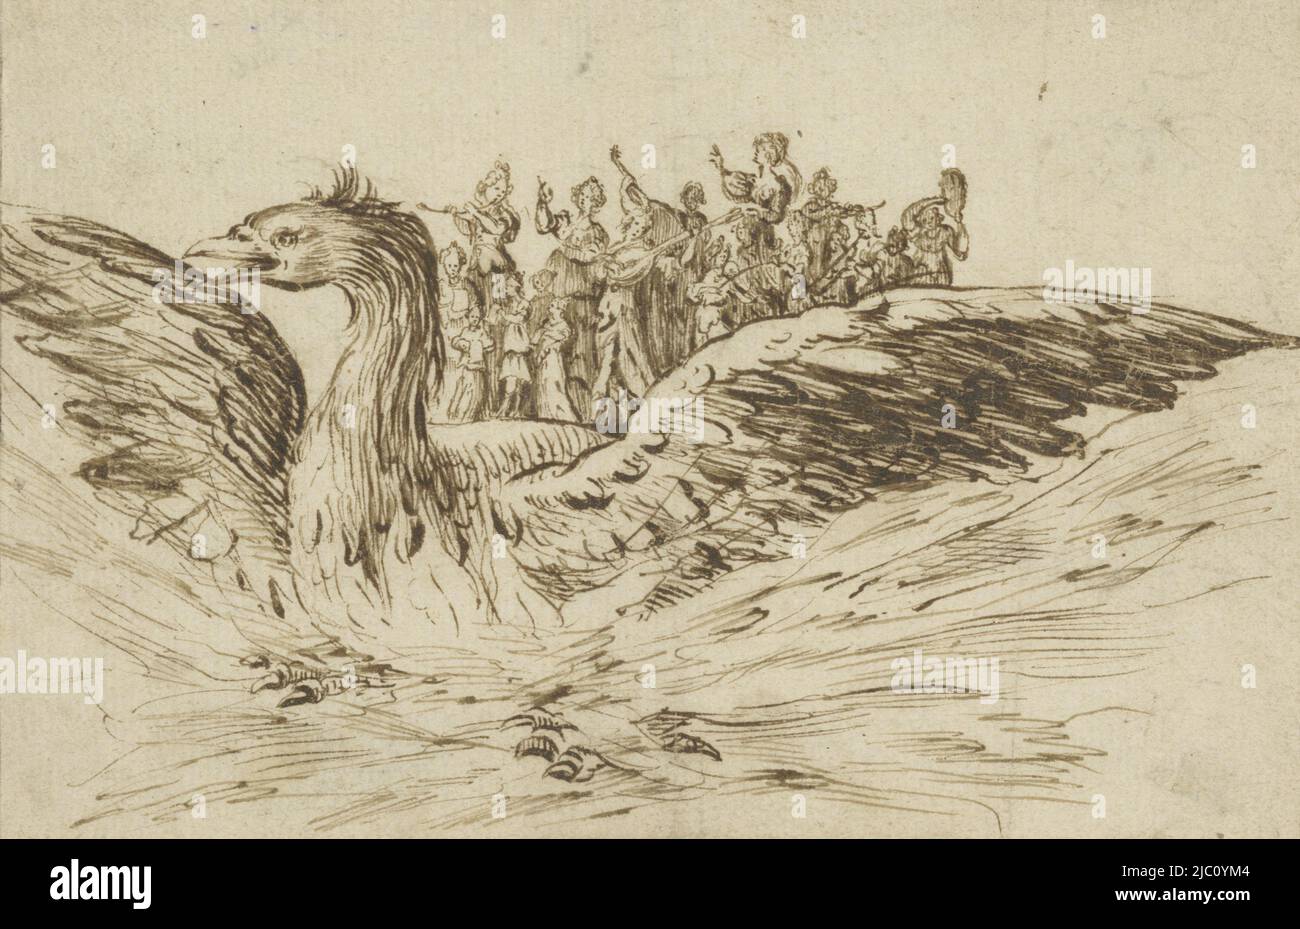 Un flotteur en forme de phoenix, sur lequel joue un groupe de musiciens, musiciens sur le dos d'un gros oiseau., Jacques Callot, dessinateur: Anonyme, 1620 - 1700, papier, stylo, h 90 mm × l 135 mm Banque D'Images